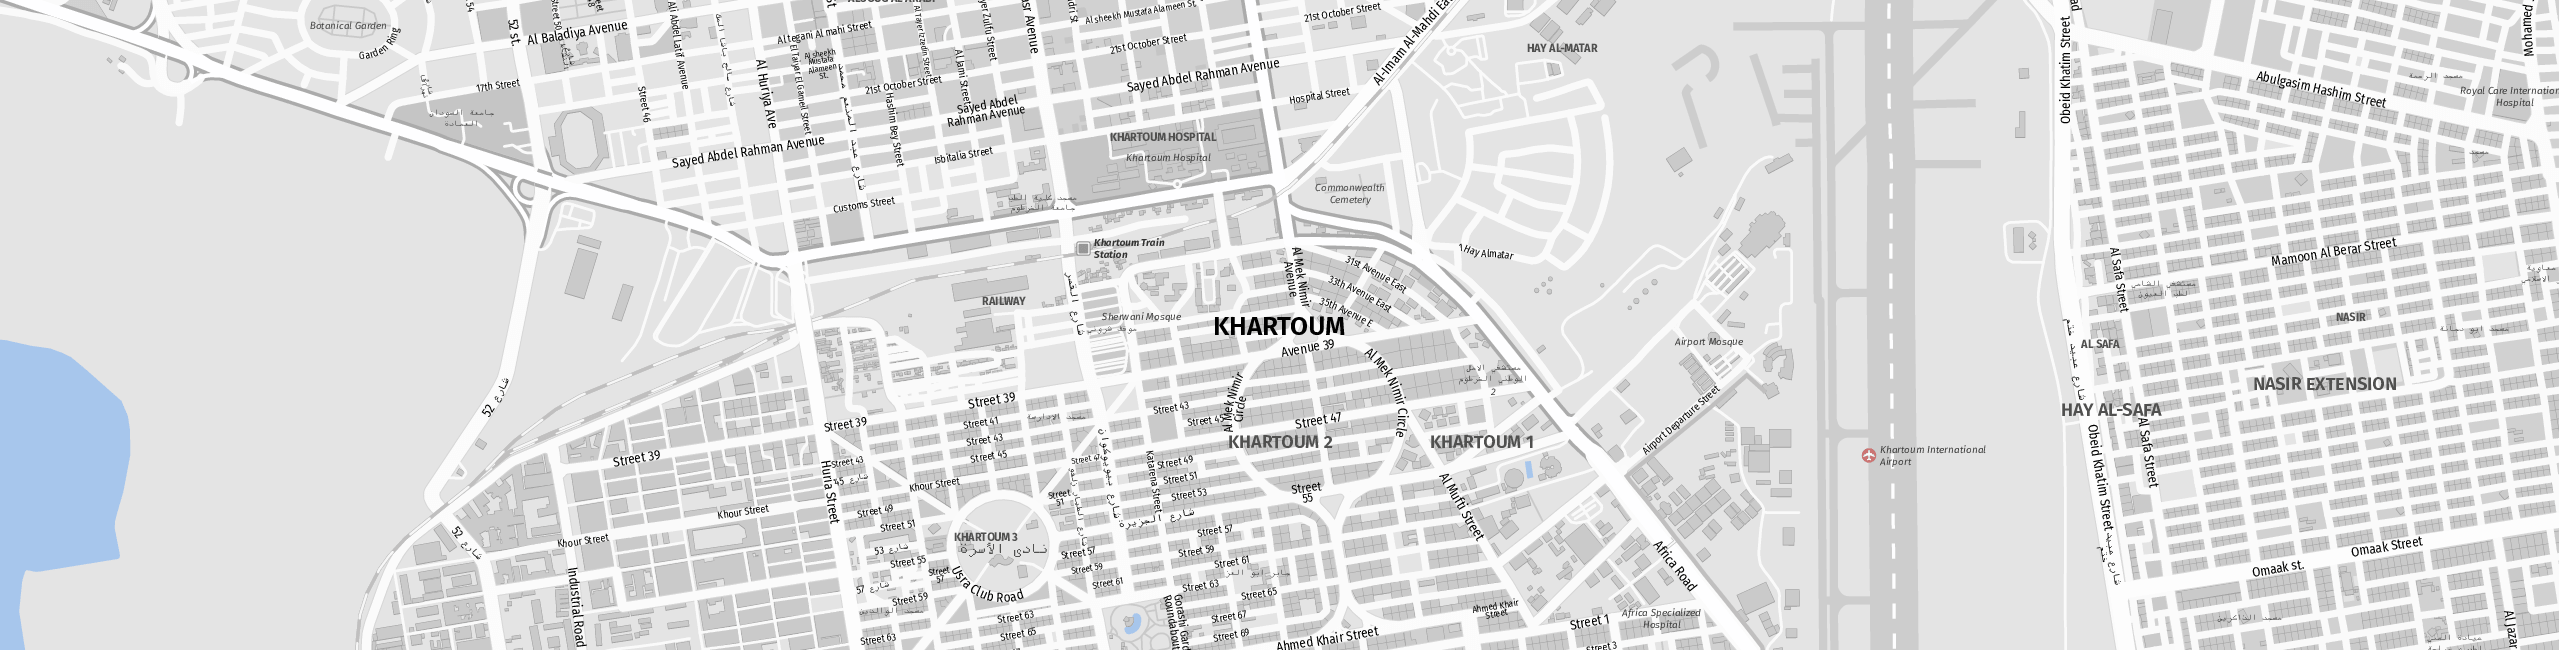 Stadtplan Khartoum zum Downloaden.